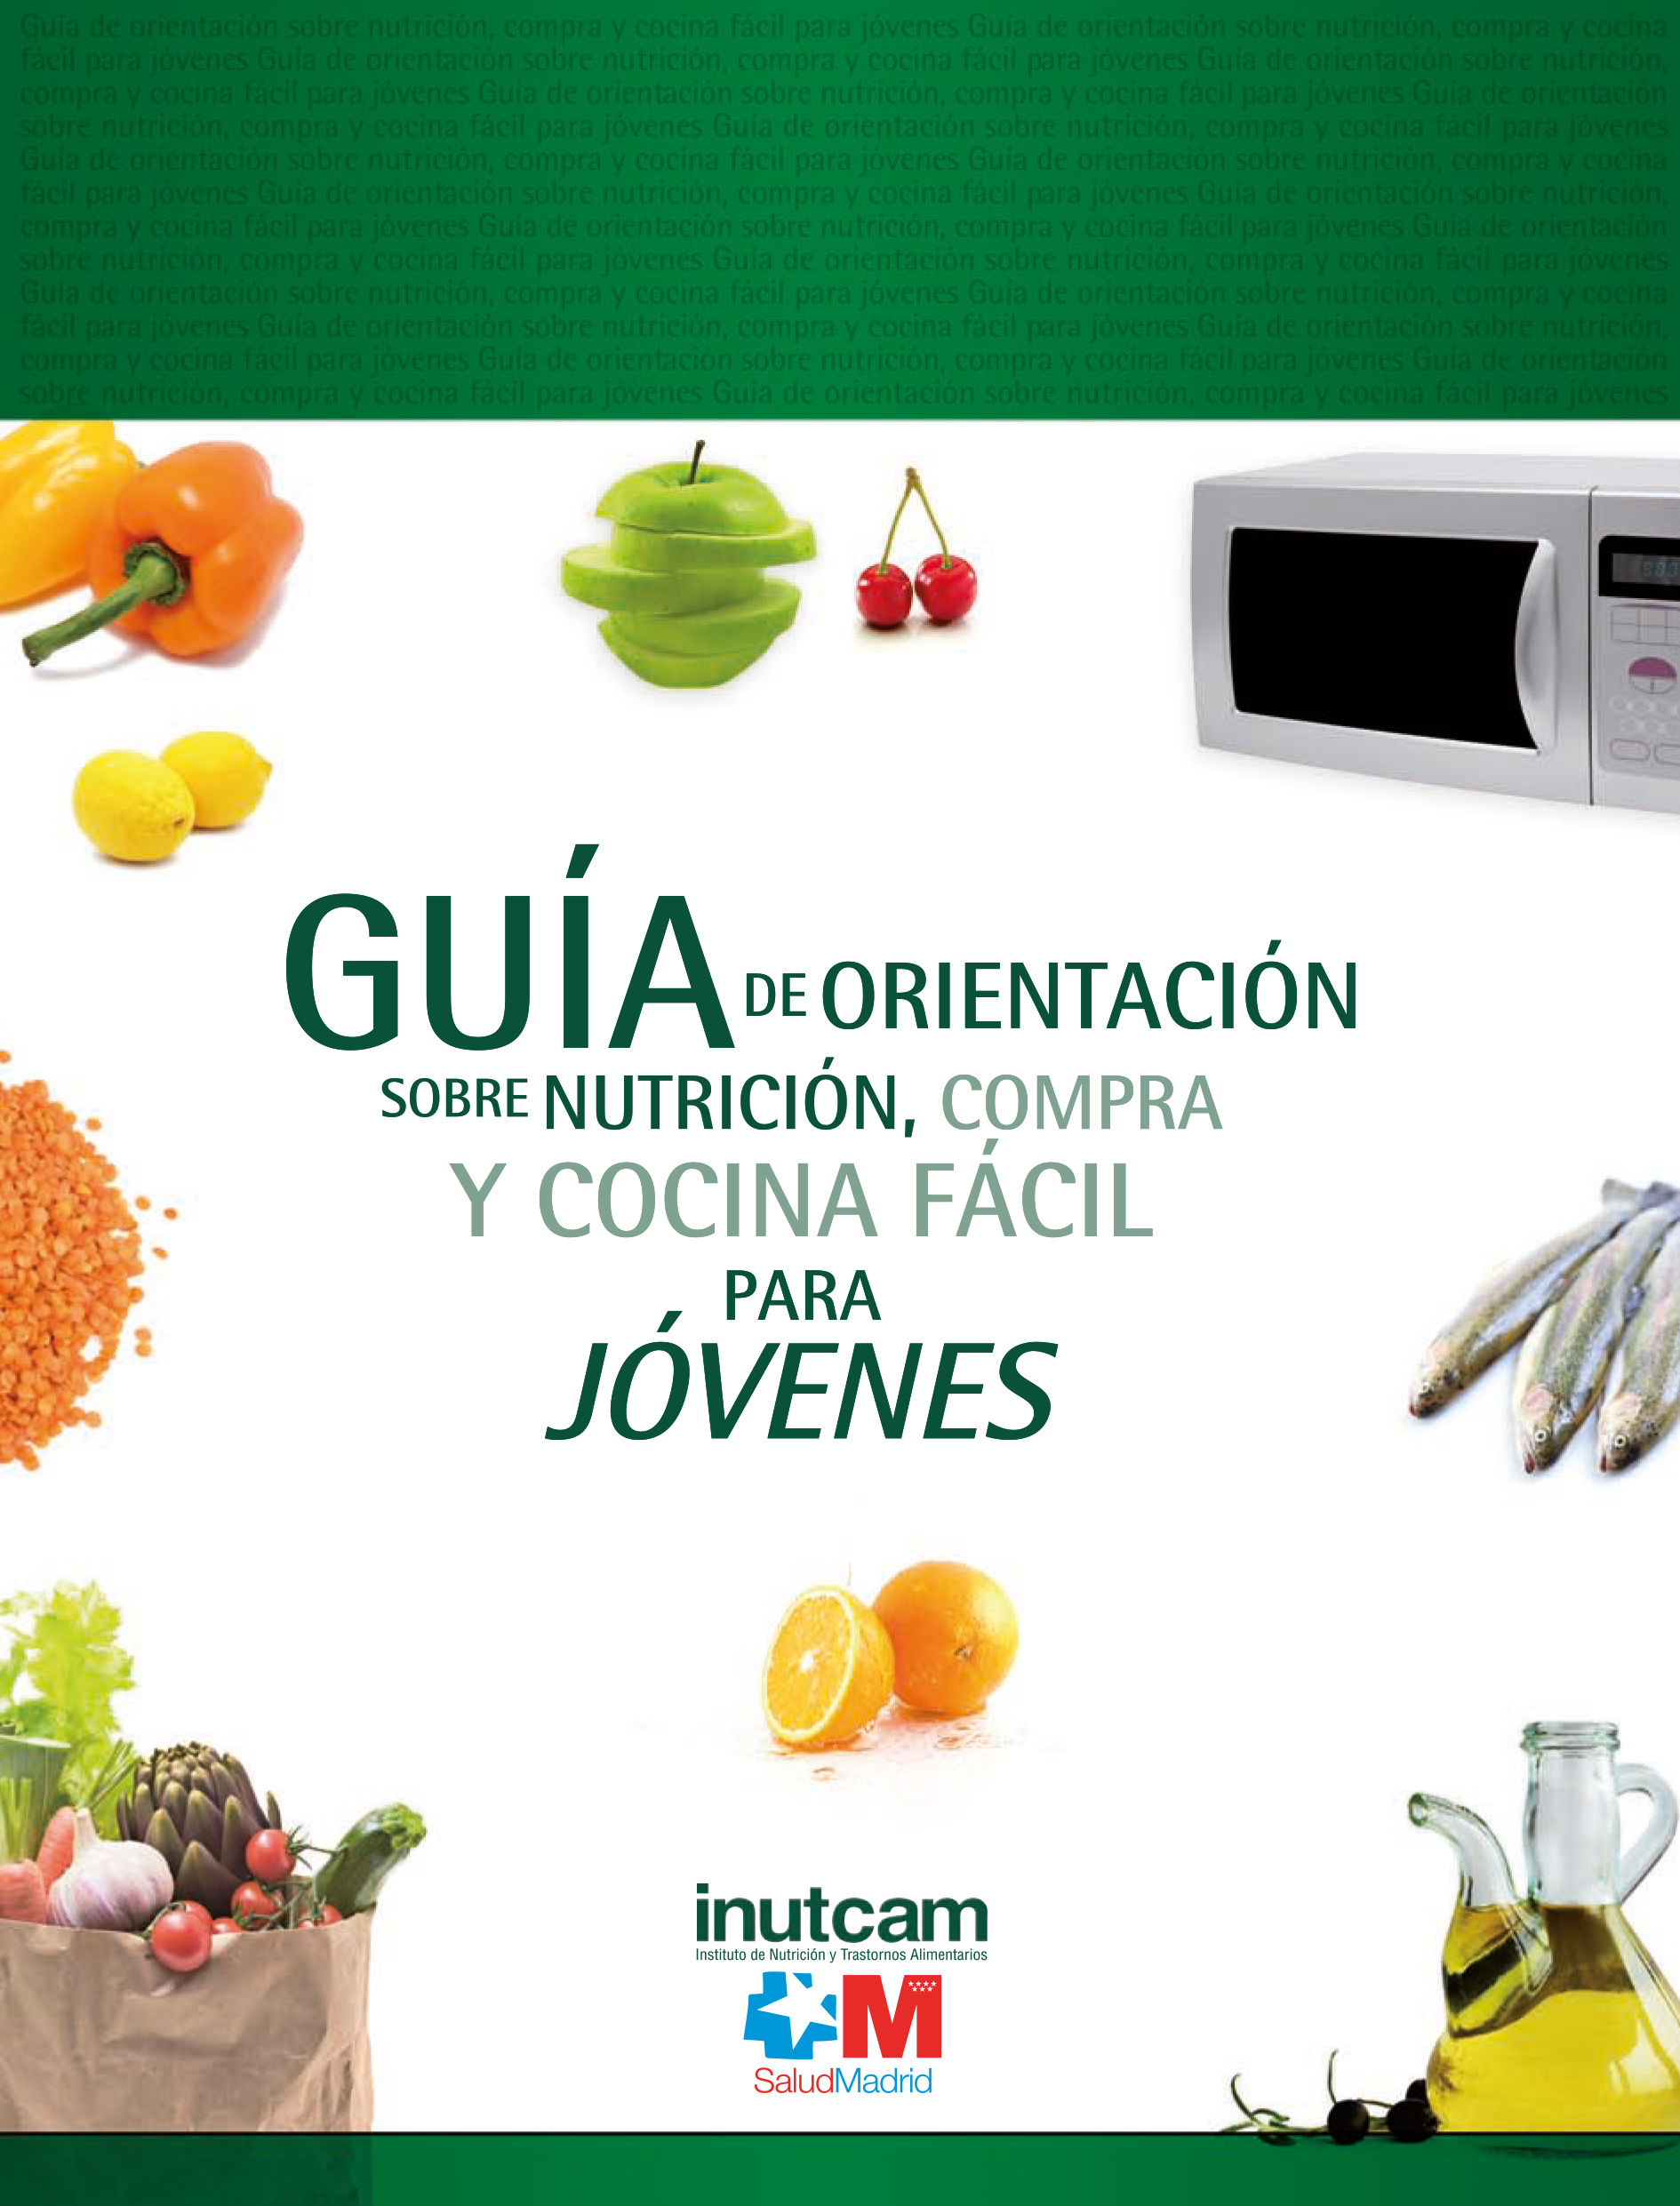 Guía de orientación sobre nutrición, compra y cocina fácil para jóvenes